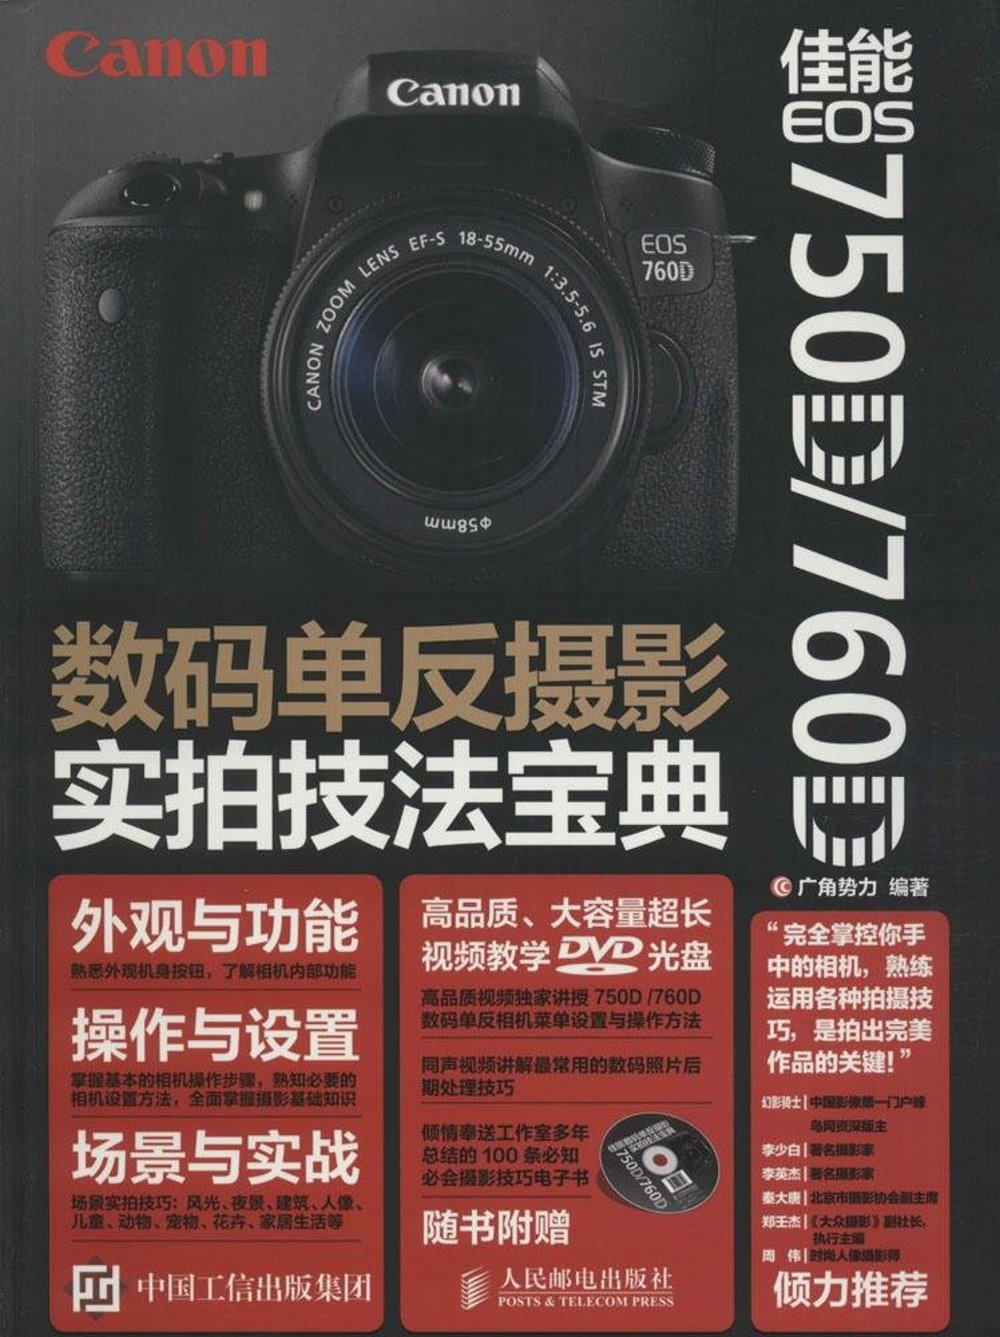 佳能 EOS 750D/760D數碼單反攝影實拍技法寶典